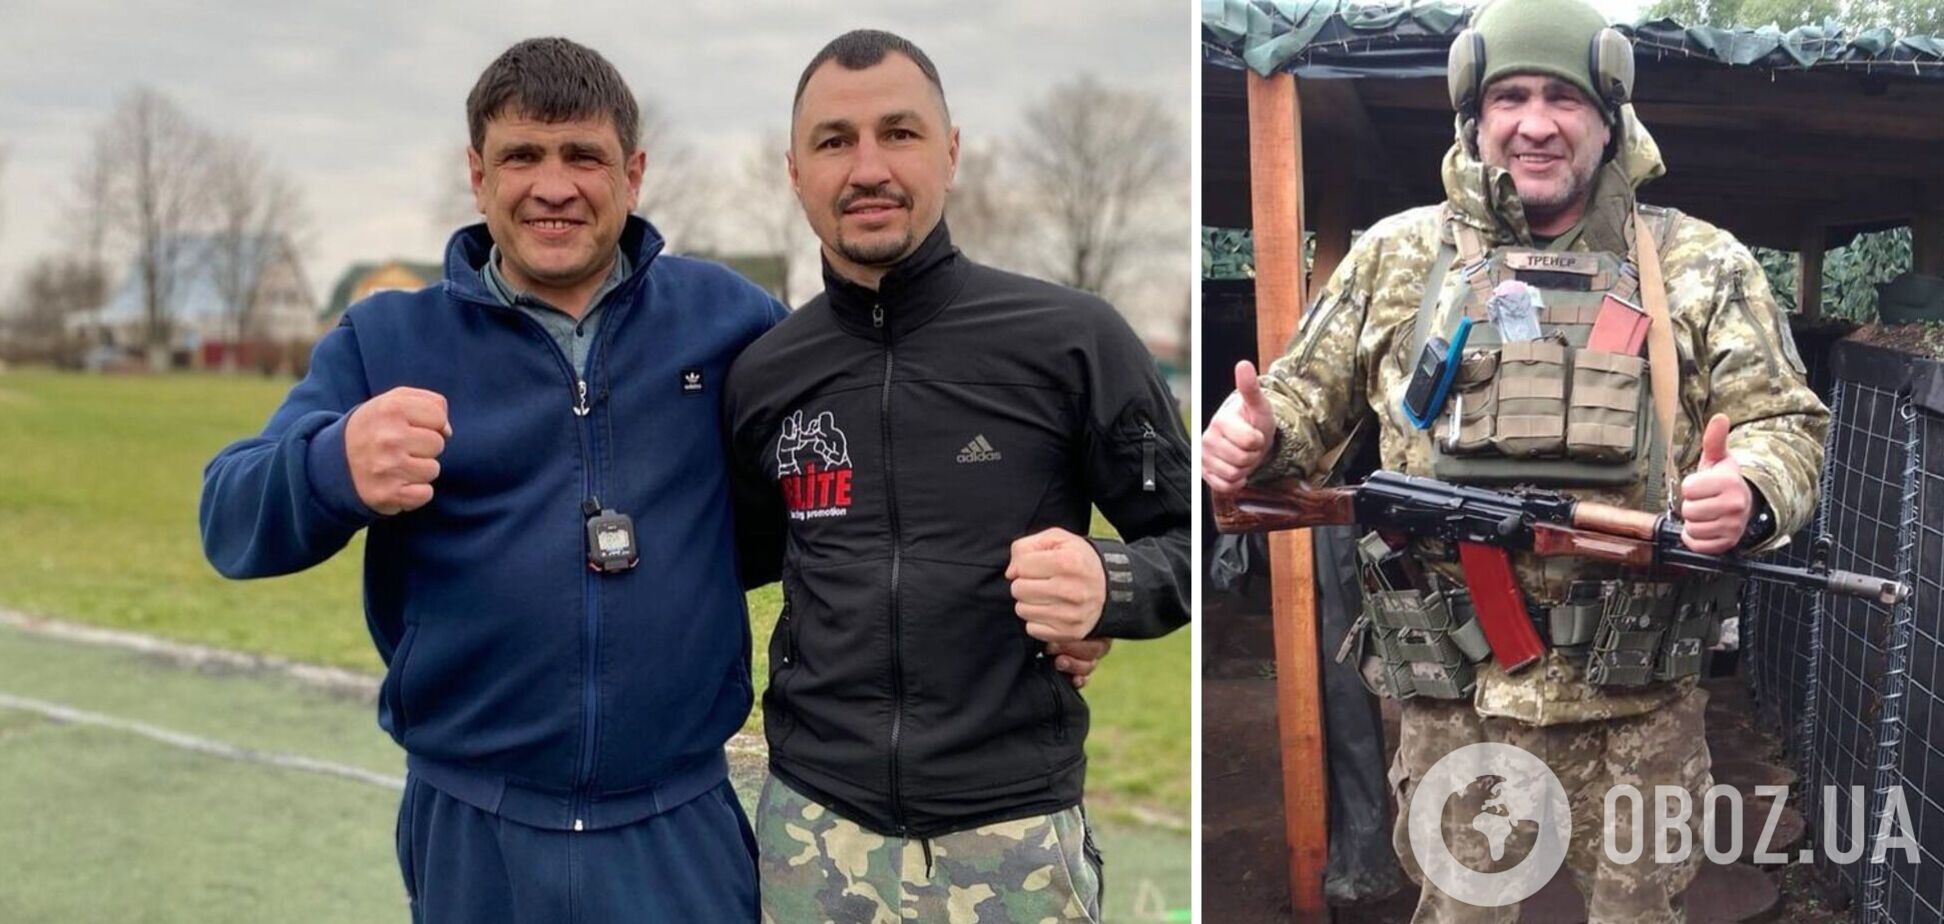 'Три тижні реанімації': перший тренер українського чемпіона світу з боксу дістав важке поранення і боровся за життя